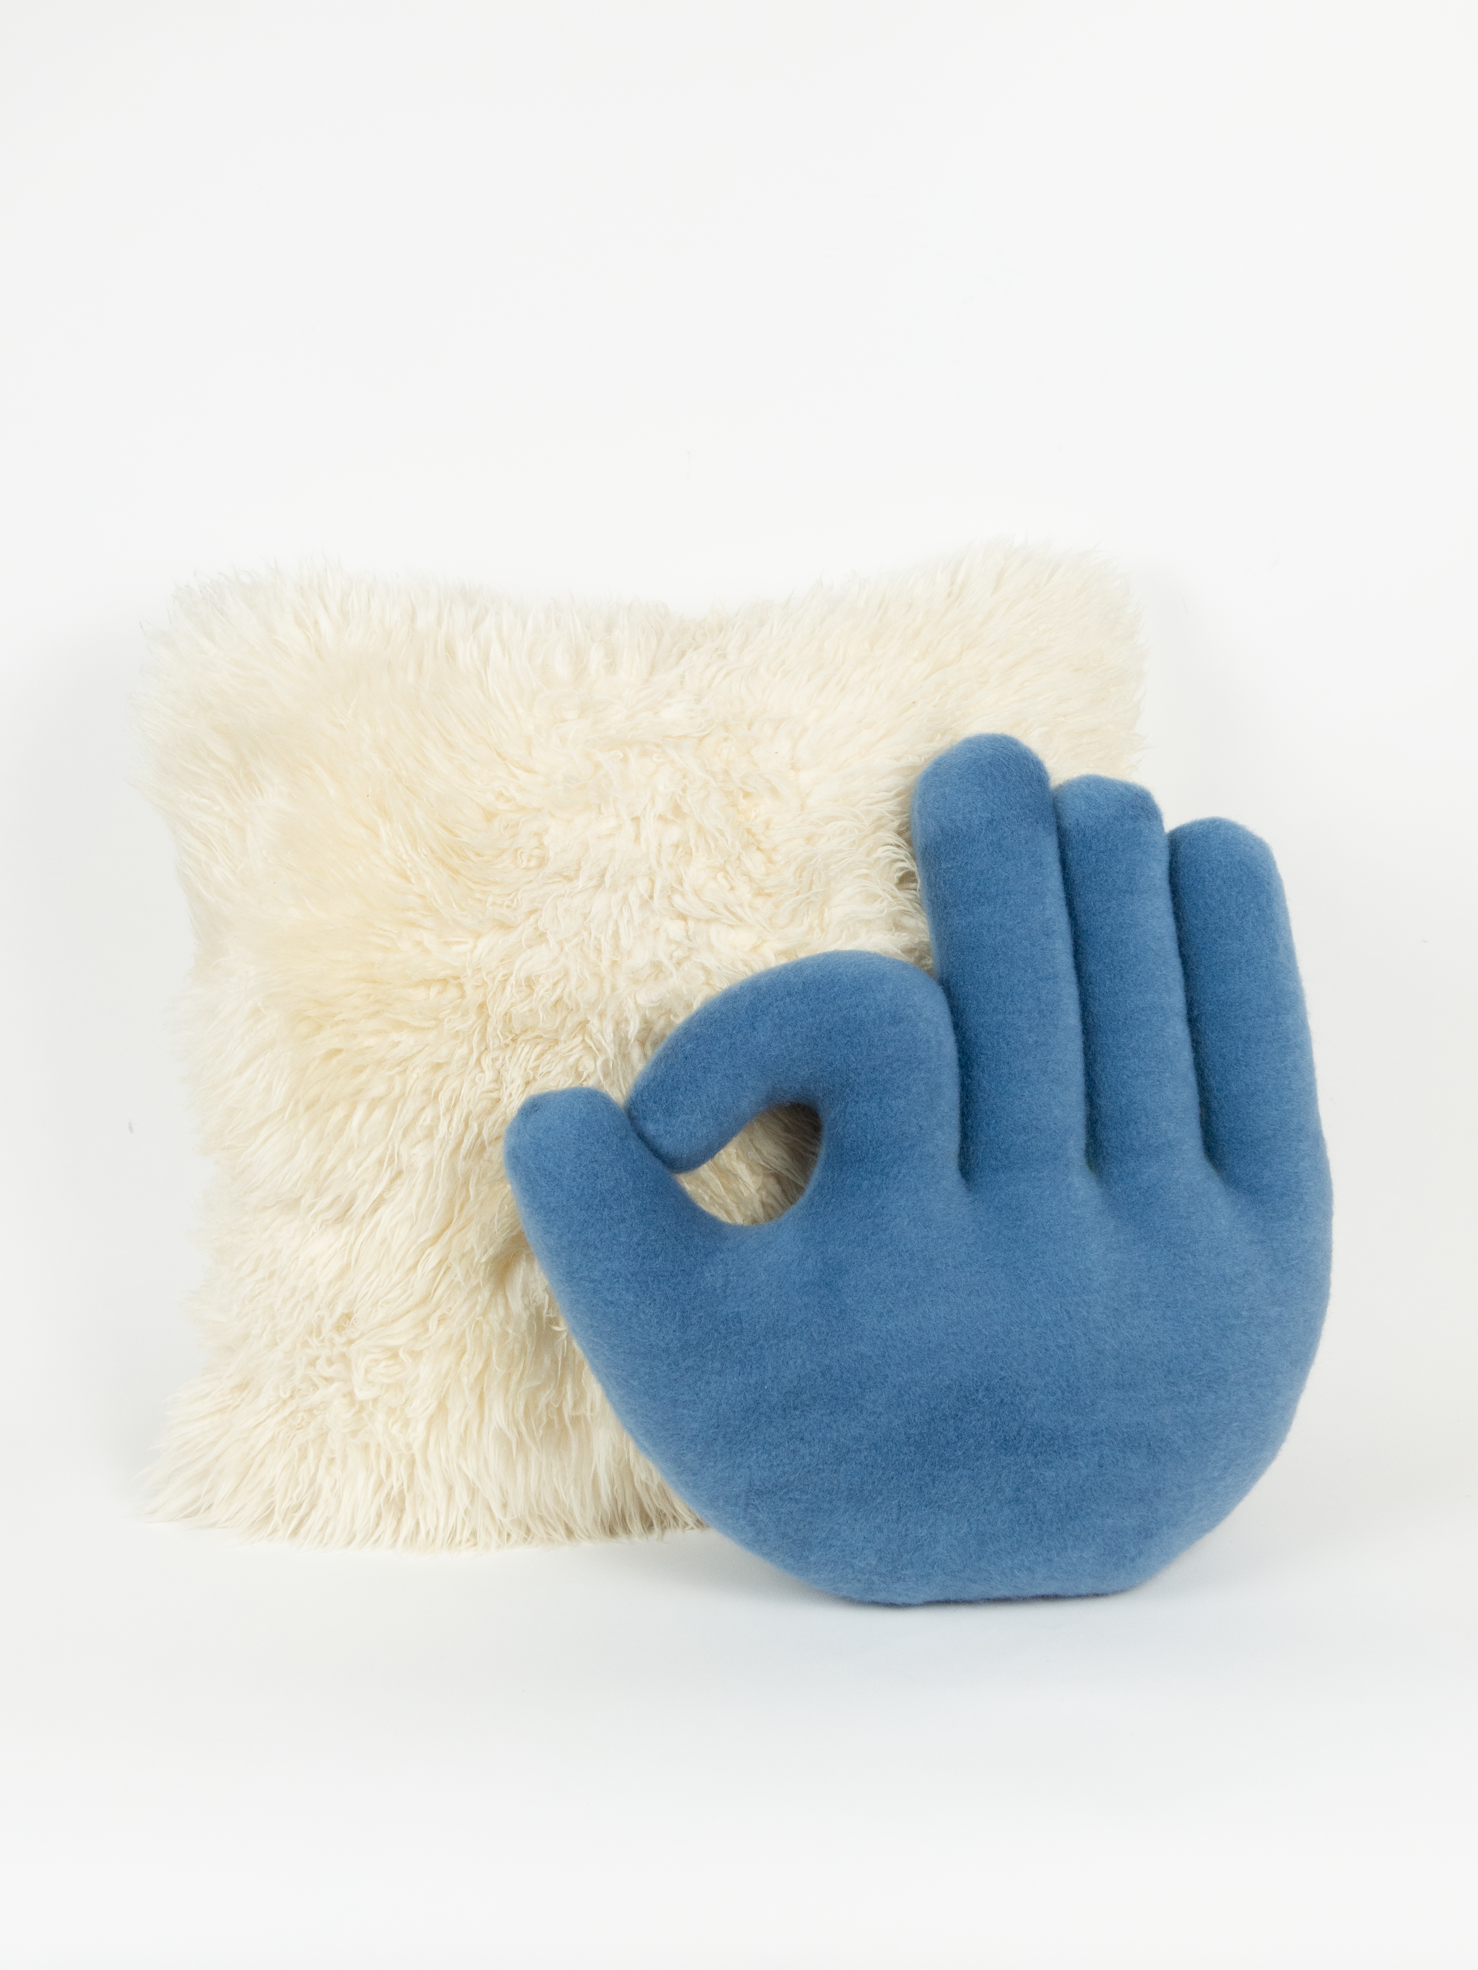 OK Hand Pillow - Blue